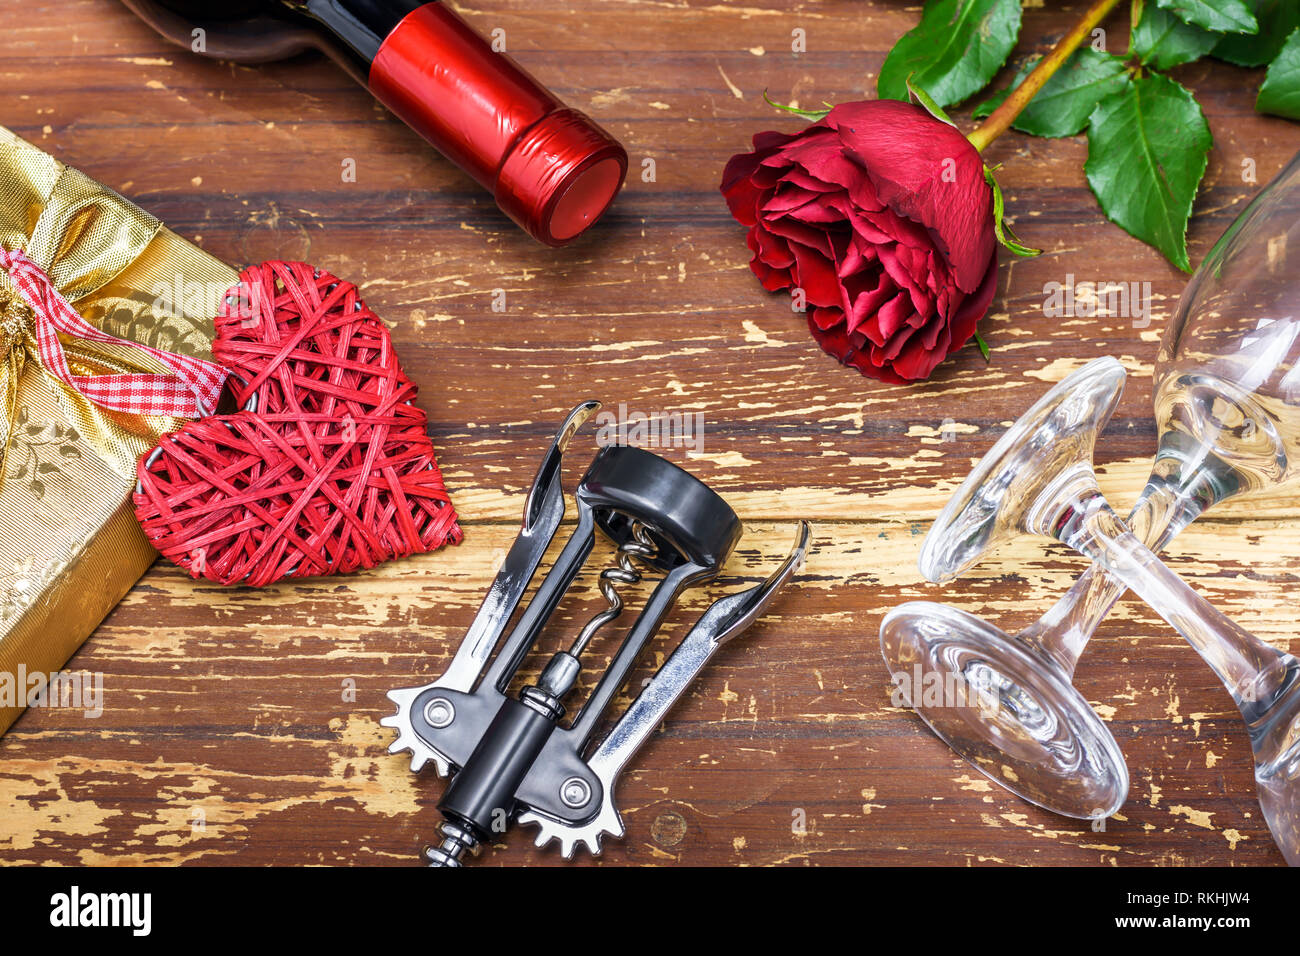 Valentinstag Konzept. Flasche Wein, korbweide Herz, Geschenkbox, rote Rosen, Korkenzieher und Gläser Wein auf hölzernen Tafel. Stockfoto